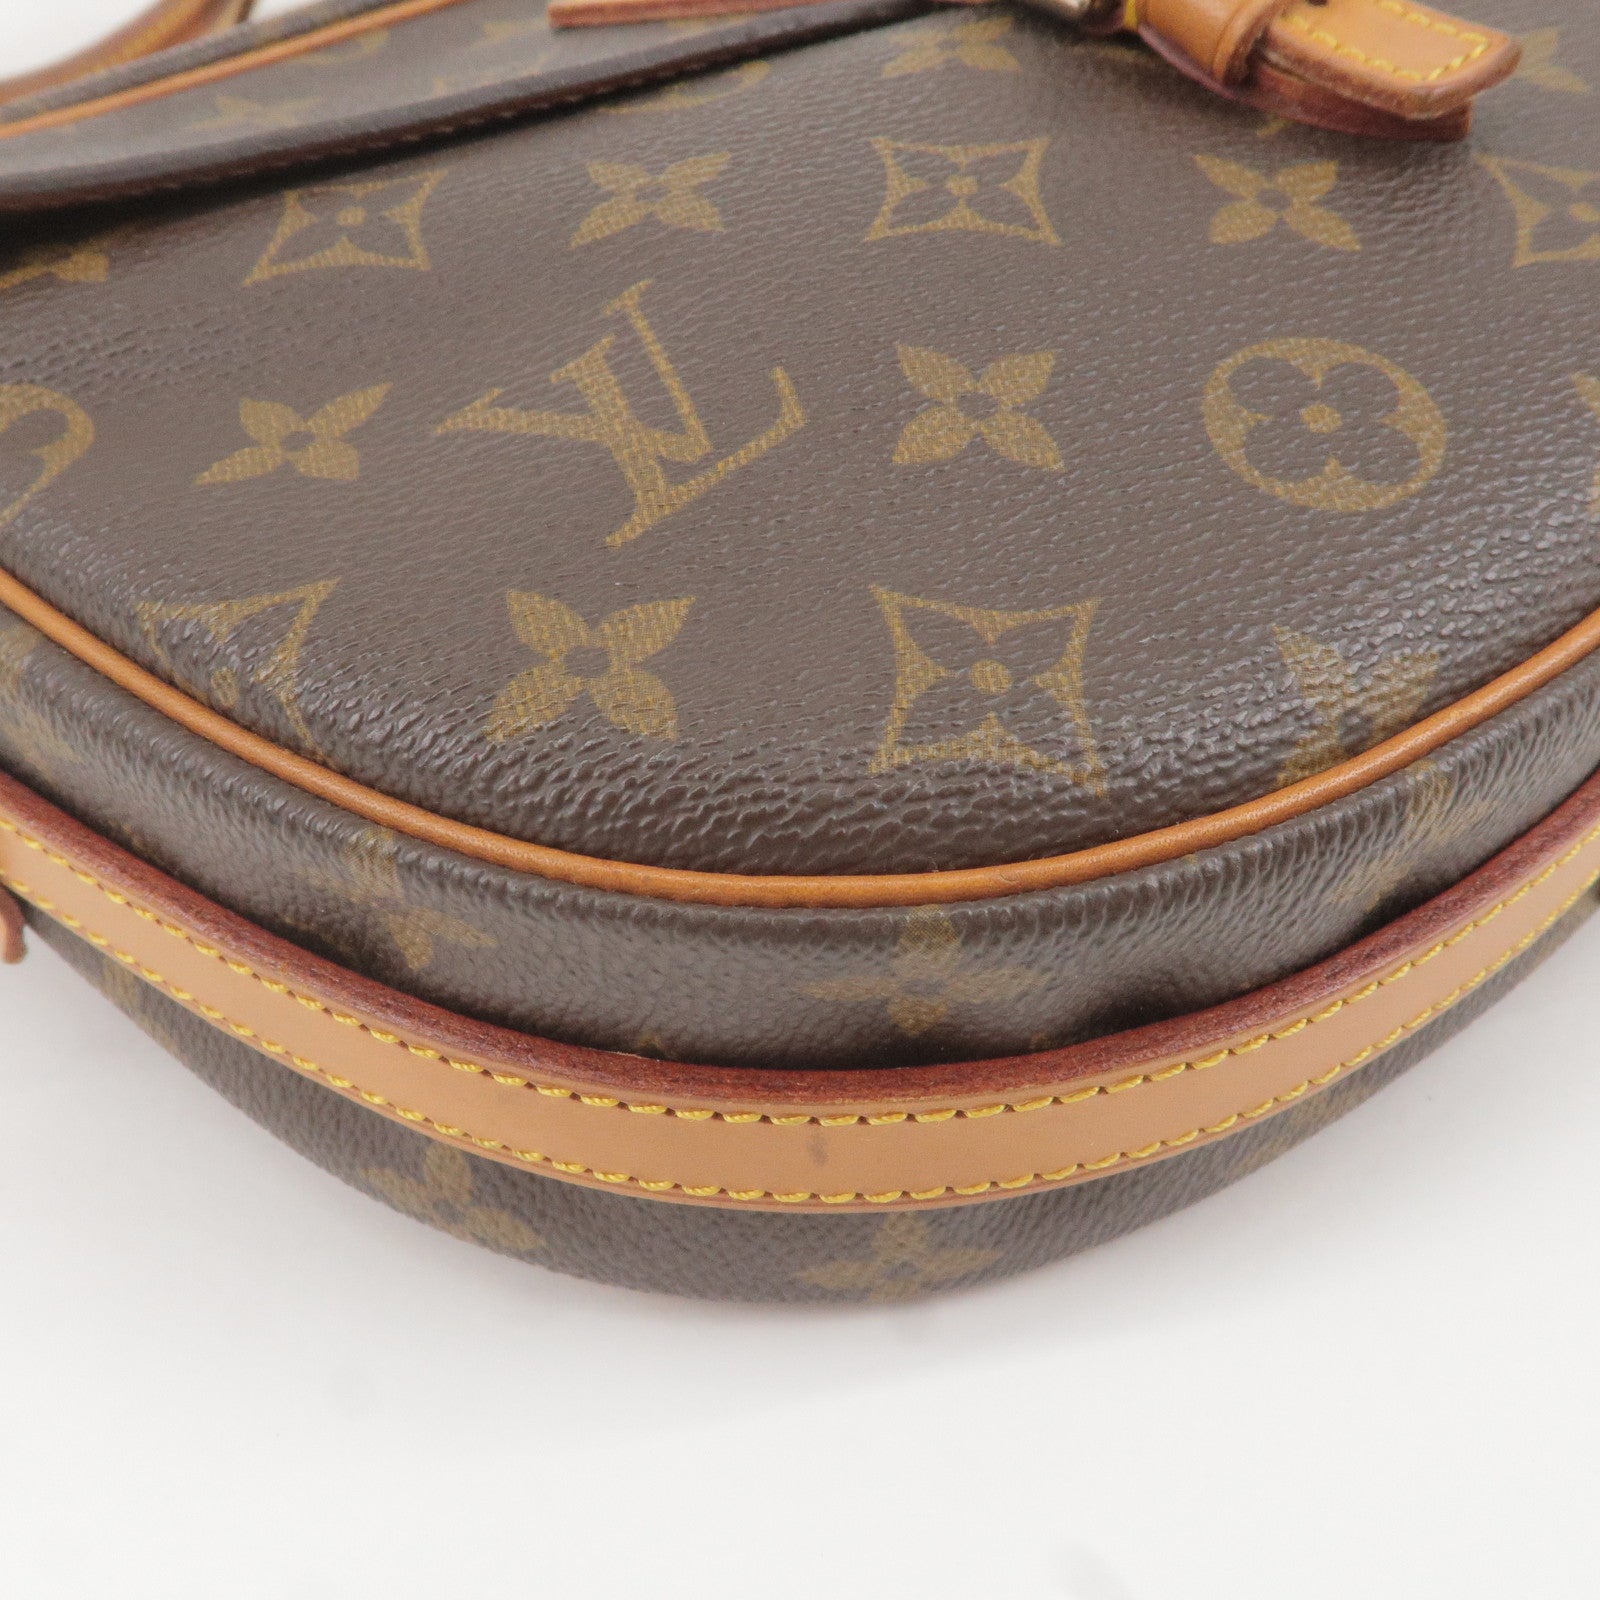 Louis Vuitton 2000 pre-owned Papillon 30 handbag